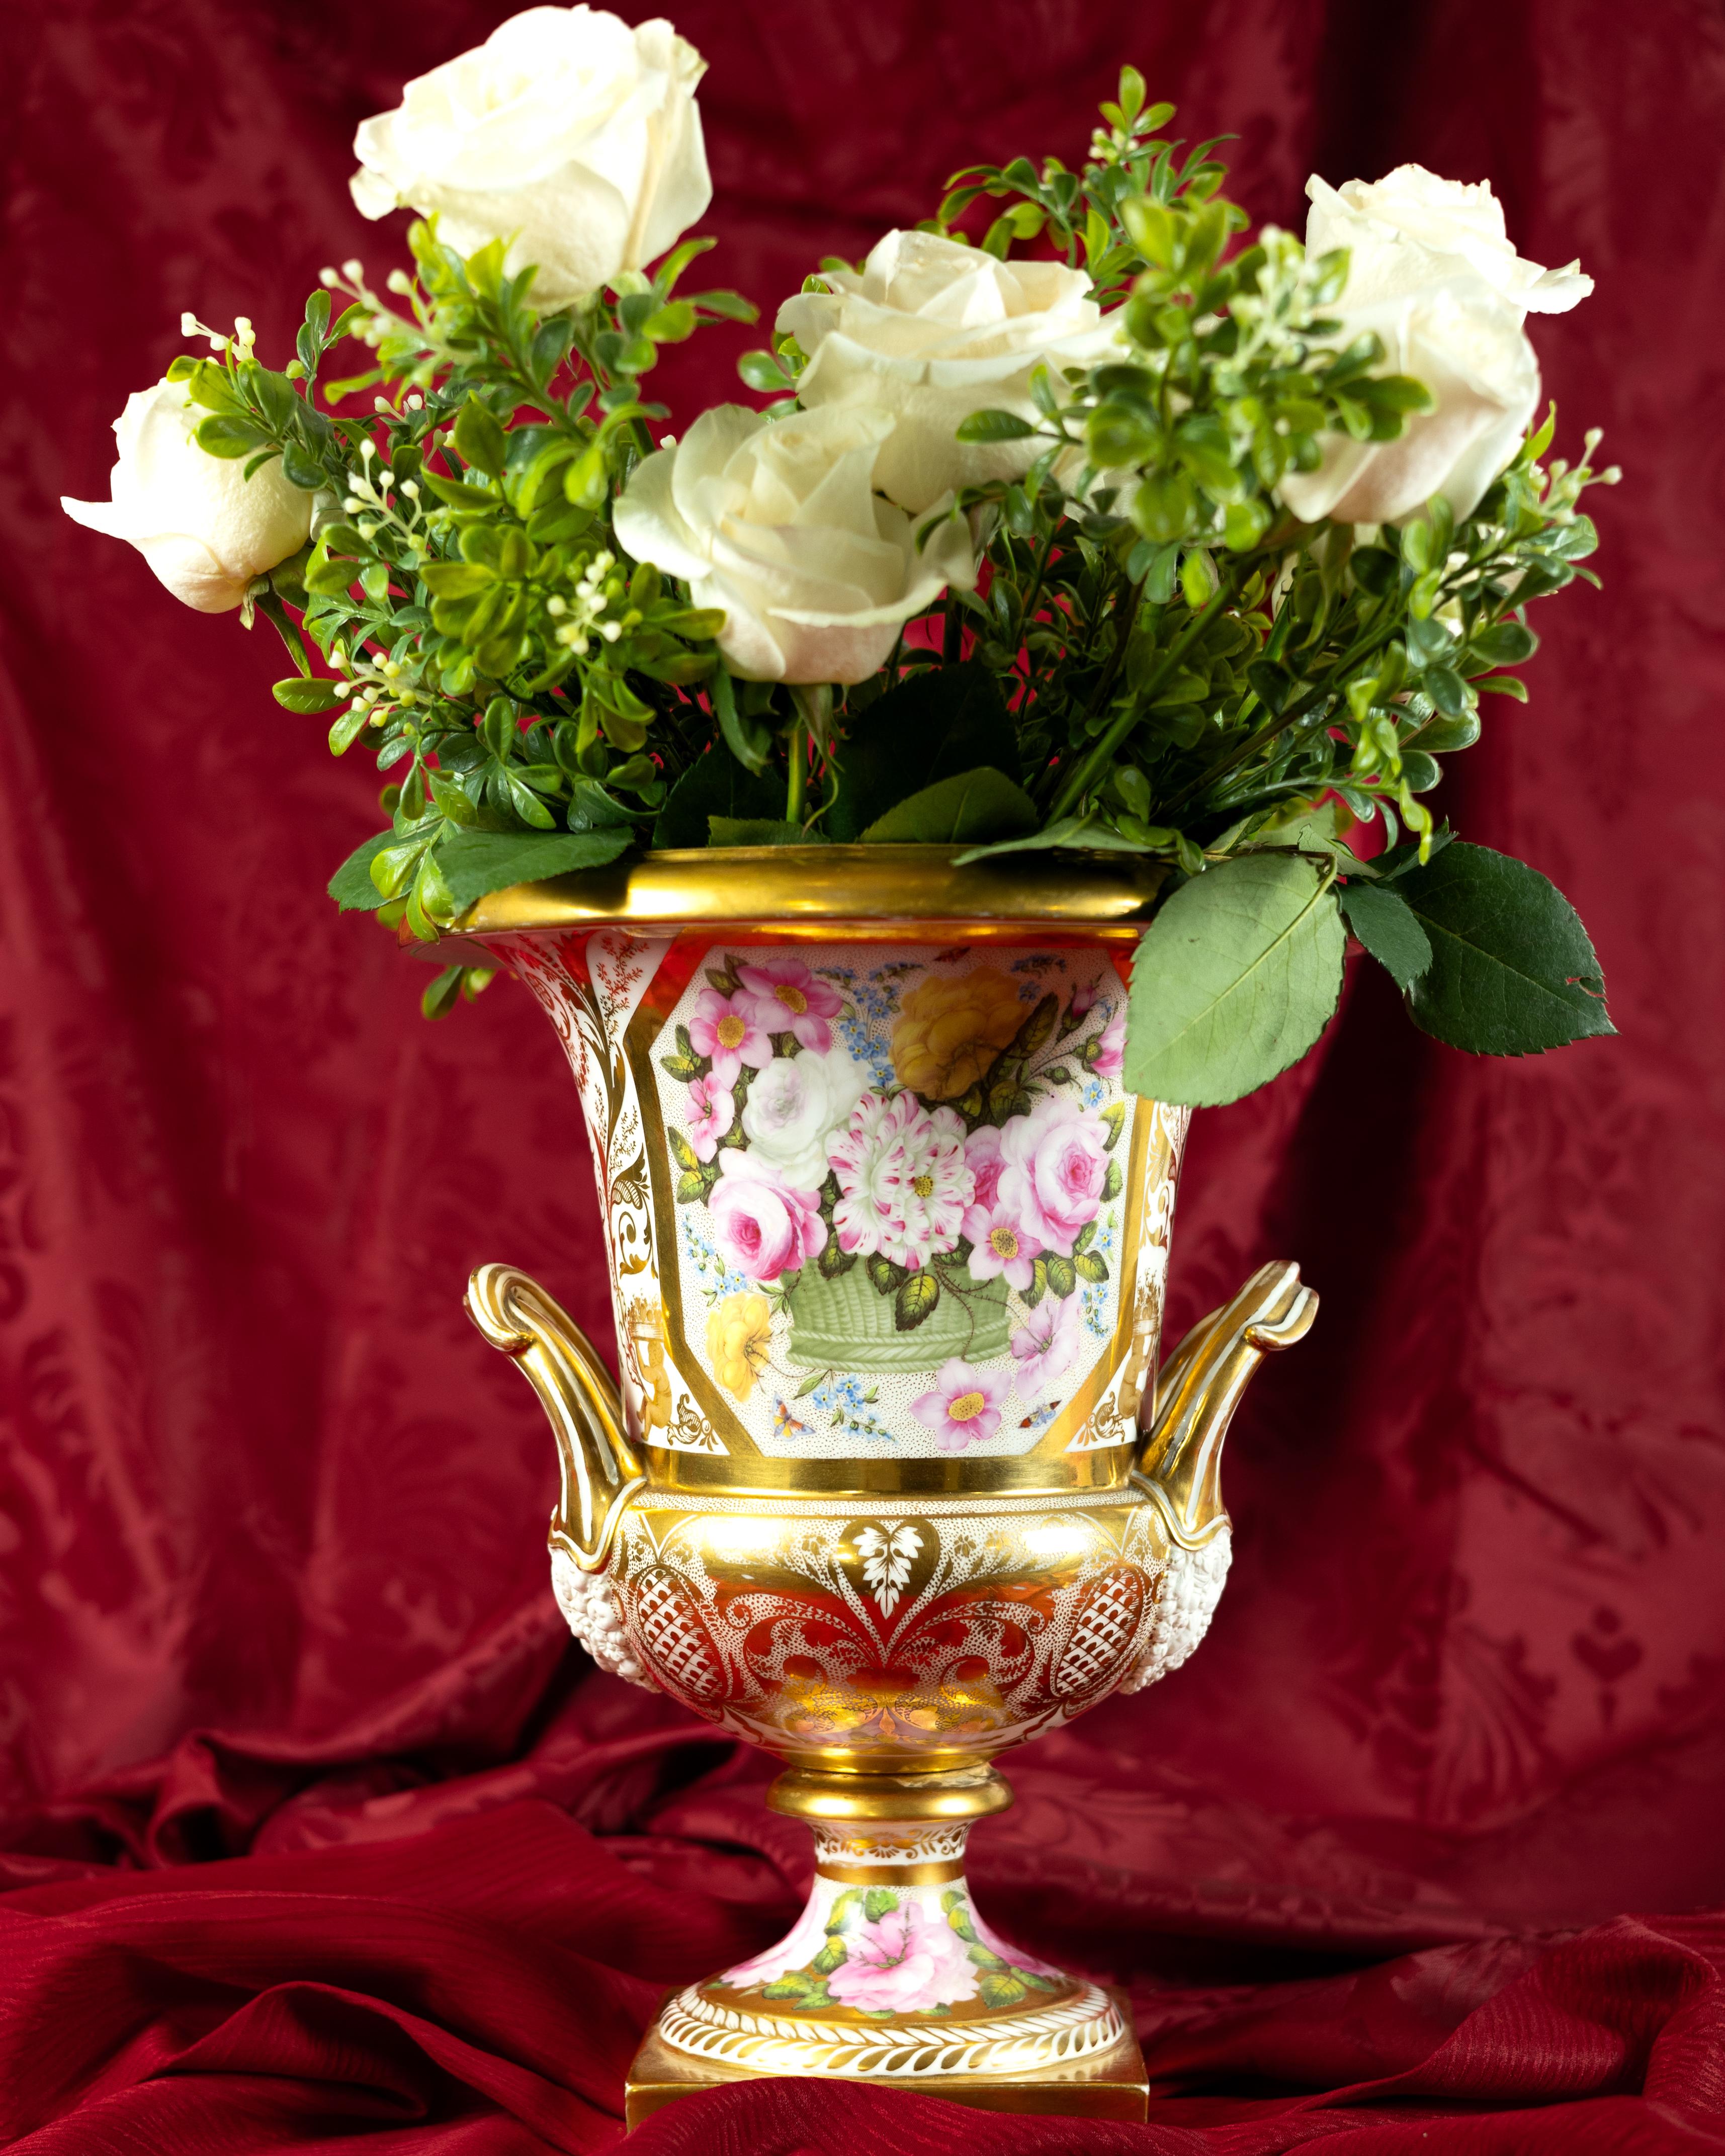  Cette importante urne en forme de campane de la période Régence est finement peinte de fabuleuses roses roses et jaunes et de petits myosotis bleus débordant d'un panier vert. 
Le revers montre de belles roses roses (voir image n°2).  
La dorure